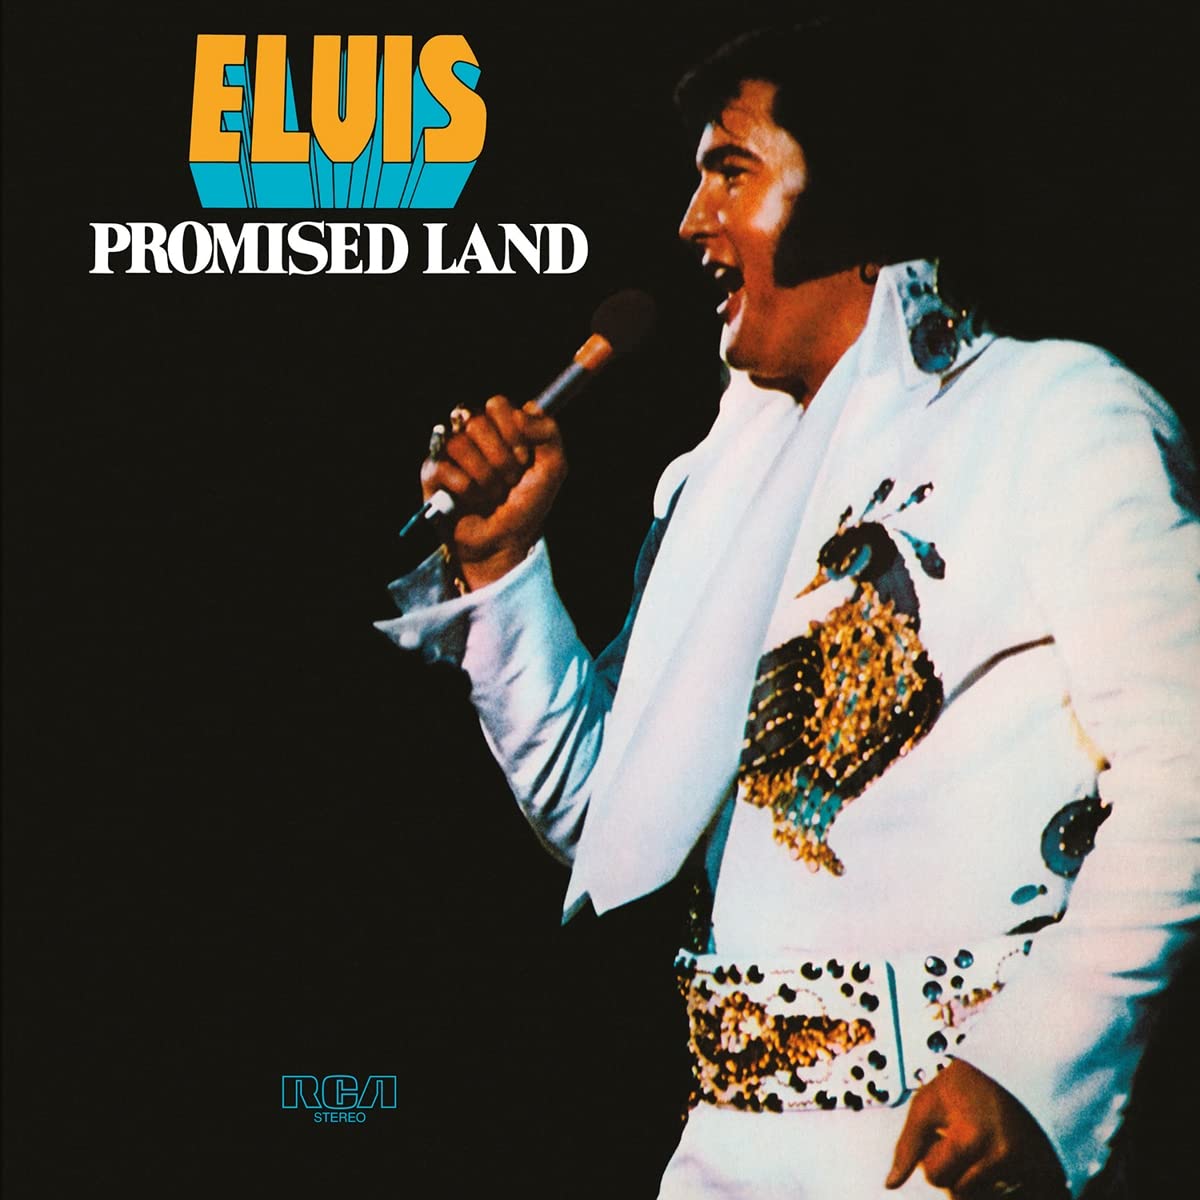 Vinile Elvis Presley - Promised Land -Hq- NUOVO SIGILLATO, EDIZIONE DEL 13/12/2021 SUBITO DISPONIBILE